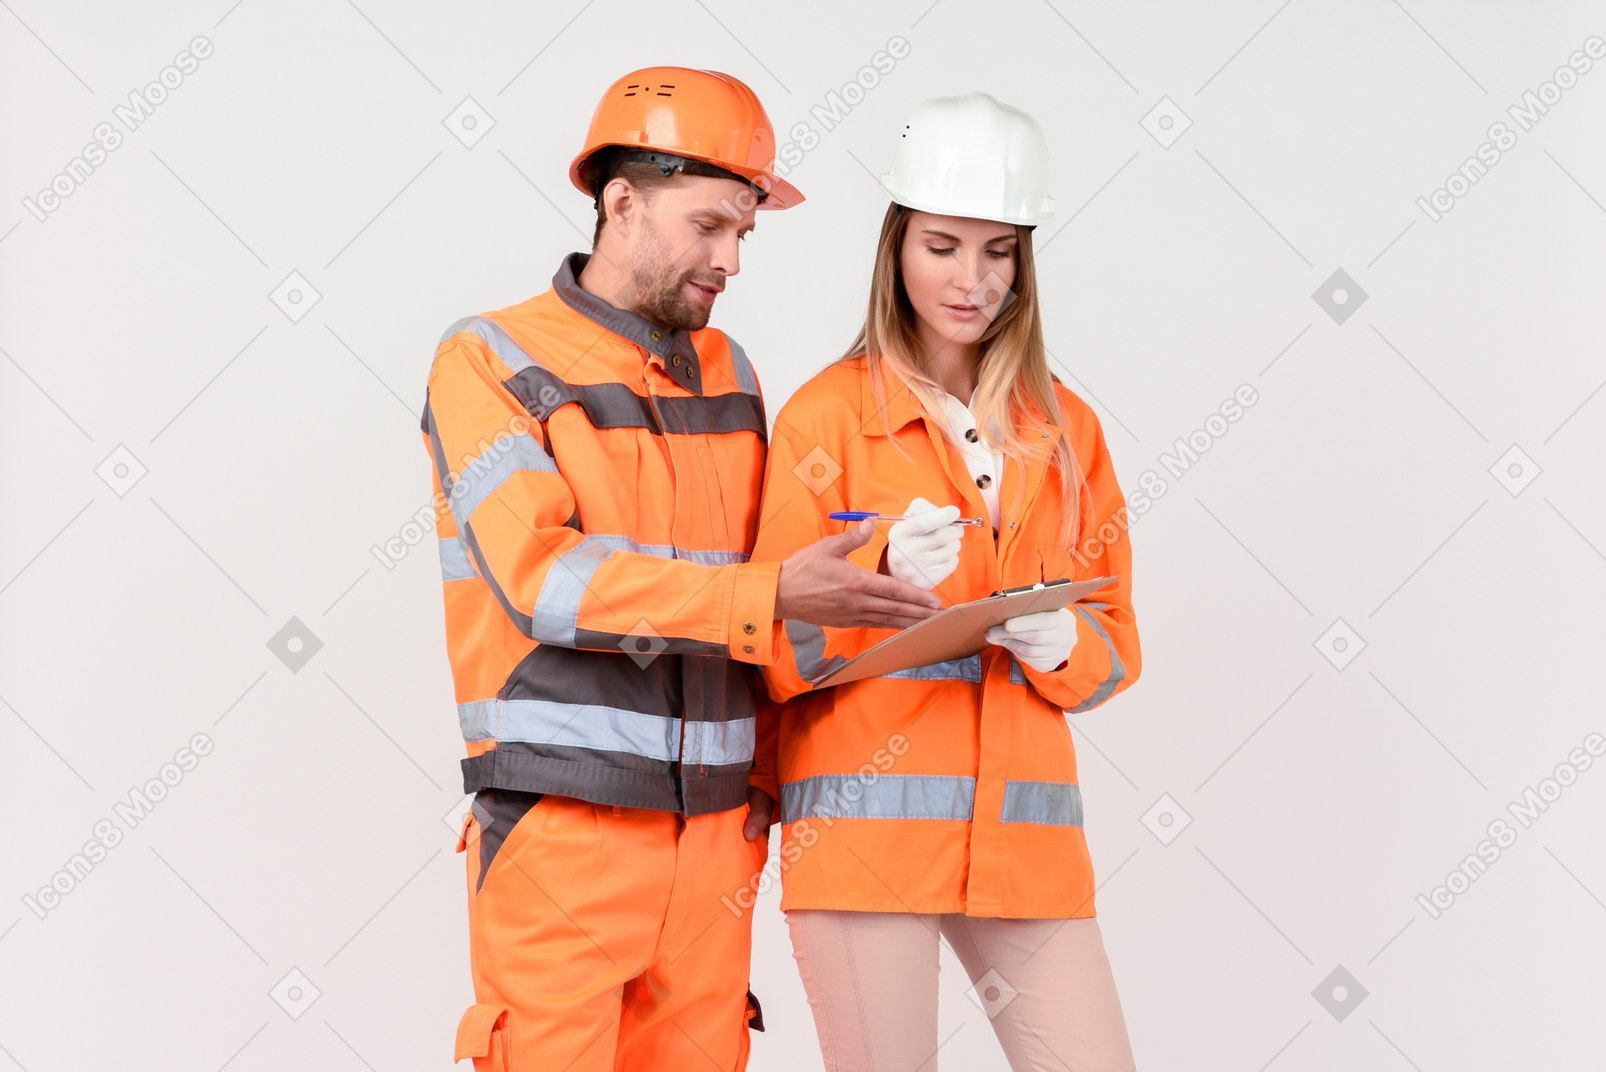 男性和女性道路工人正在讨论某事